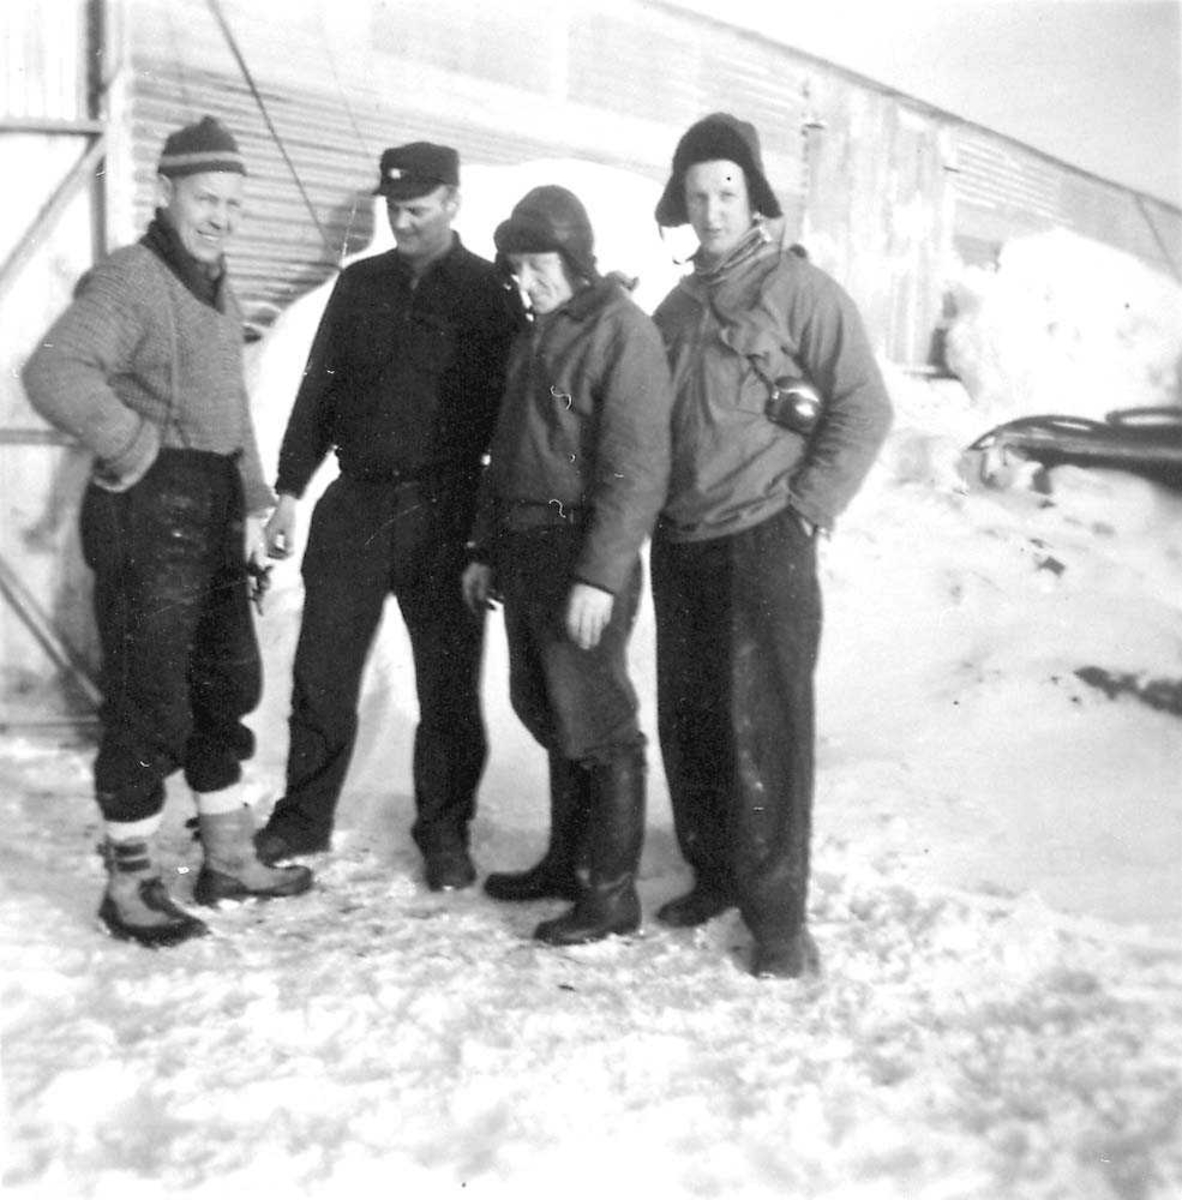 Fire personer som står foran en bygning, menn. Snø på bakken.